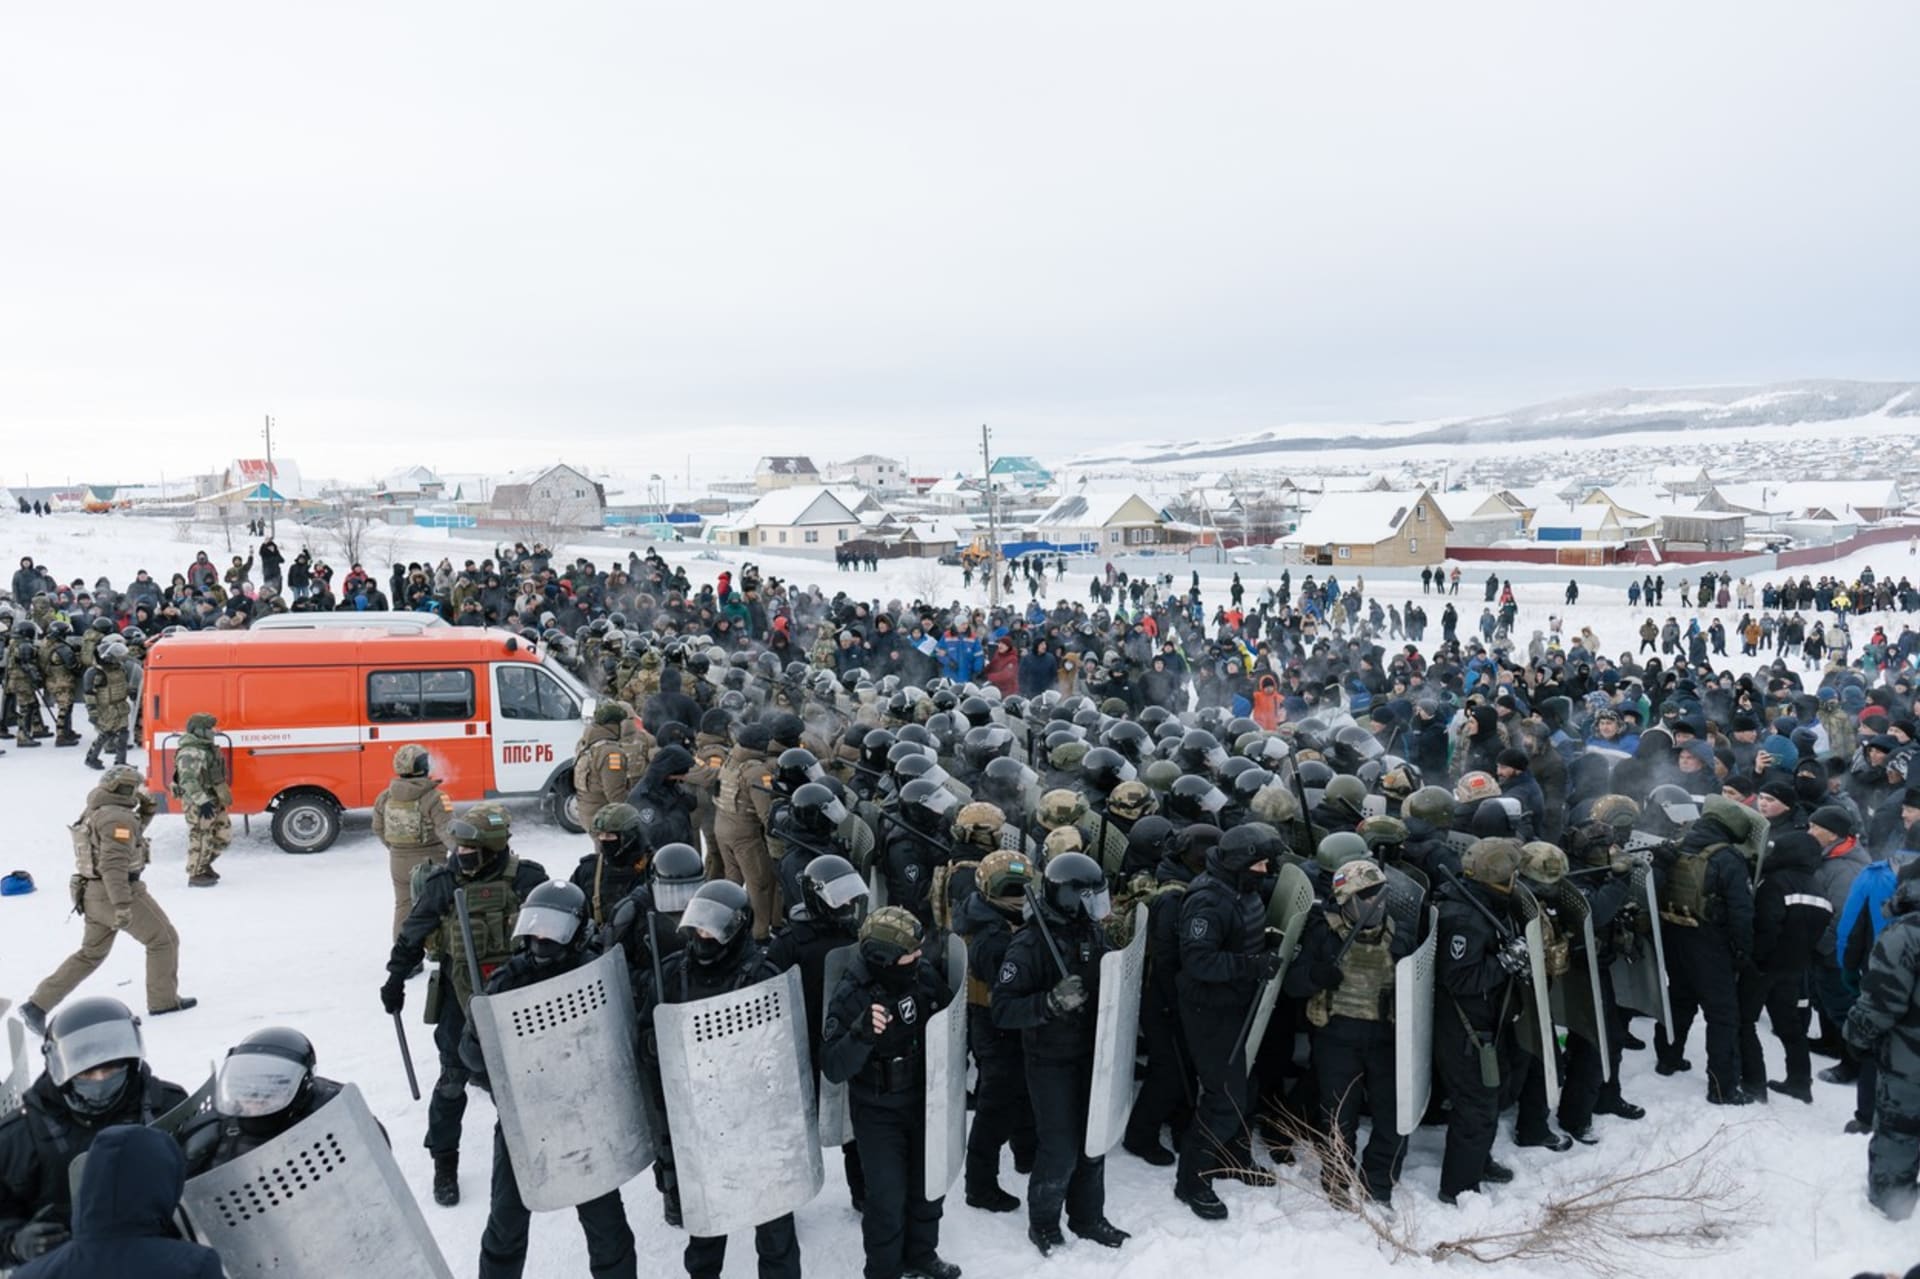 V ruském městě Bajmak lidé protestovali proti policii, soudnímu verdiktu a vládě.